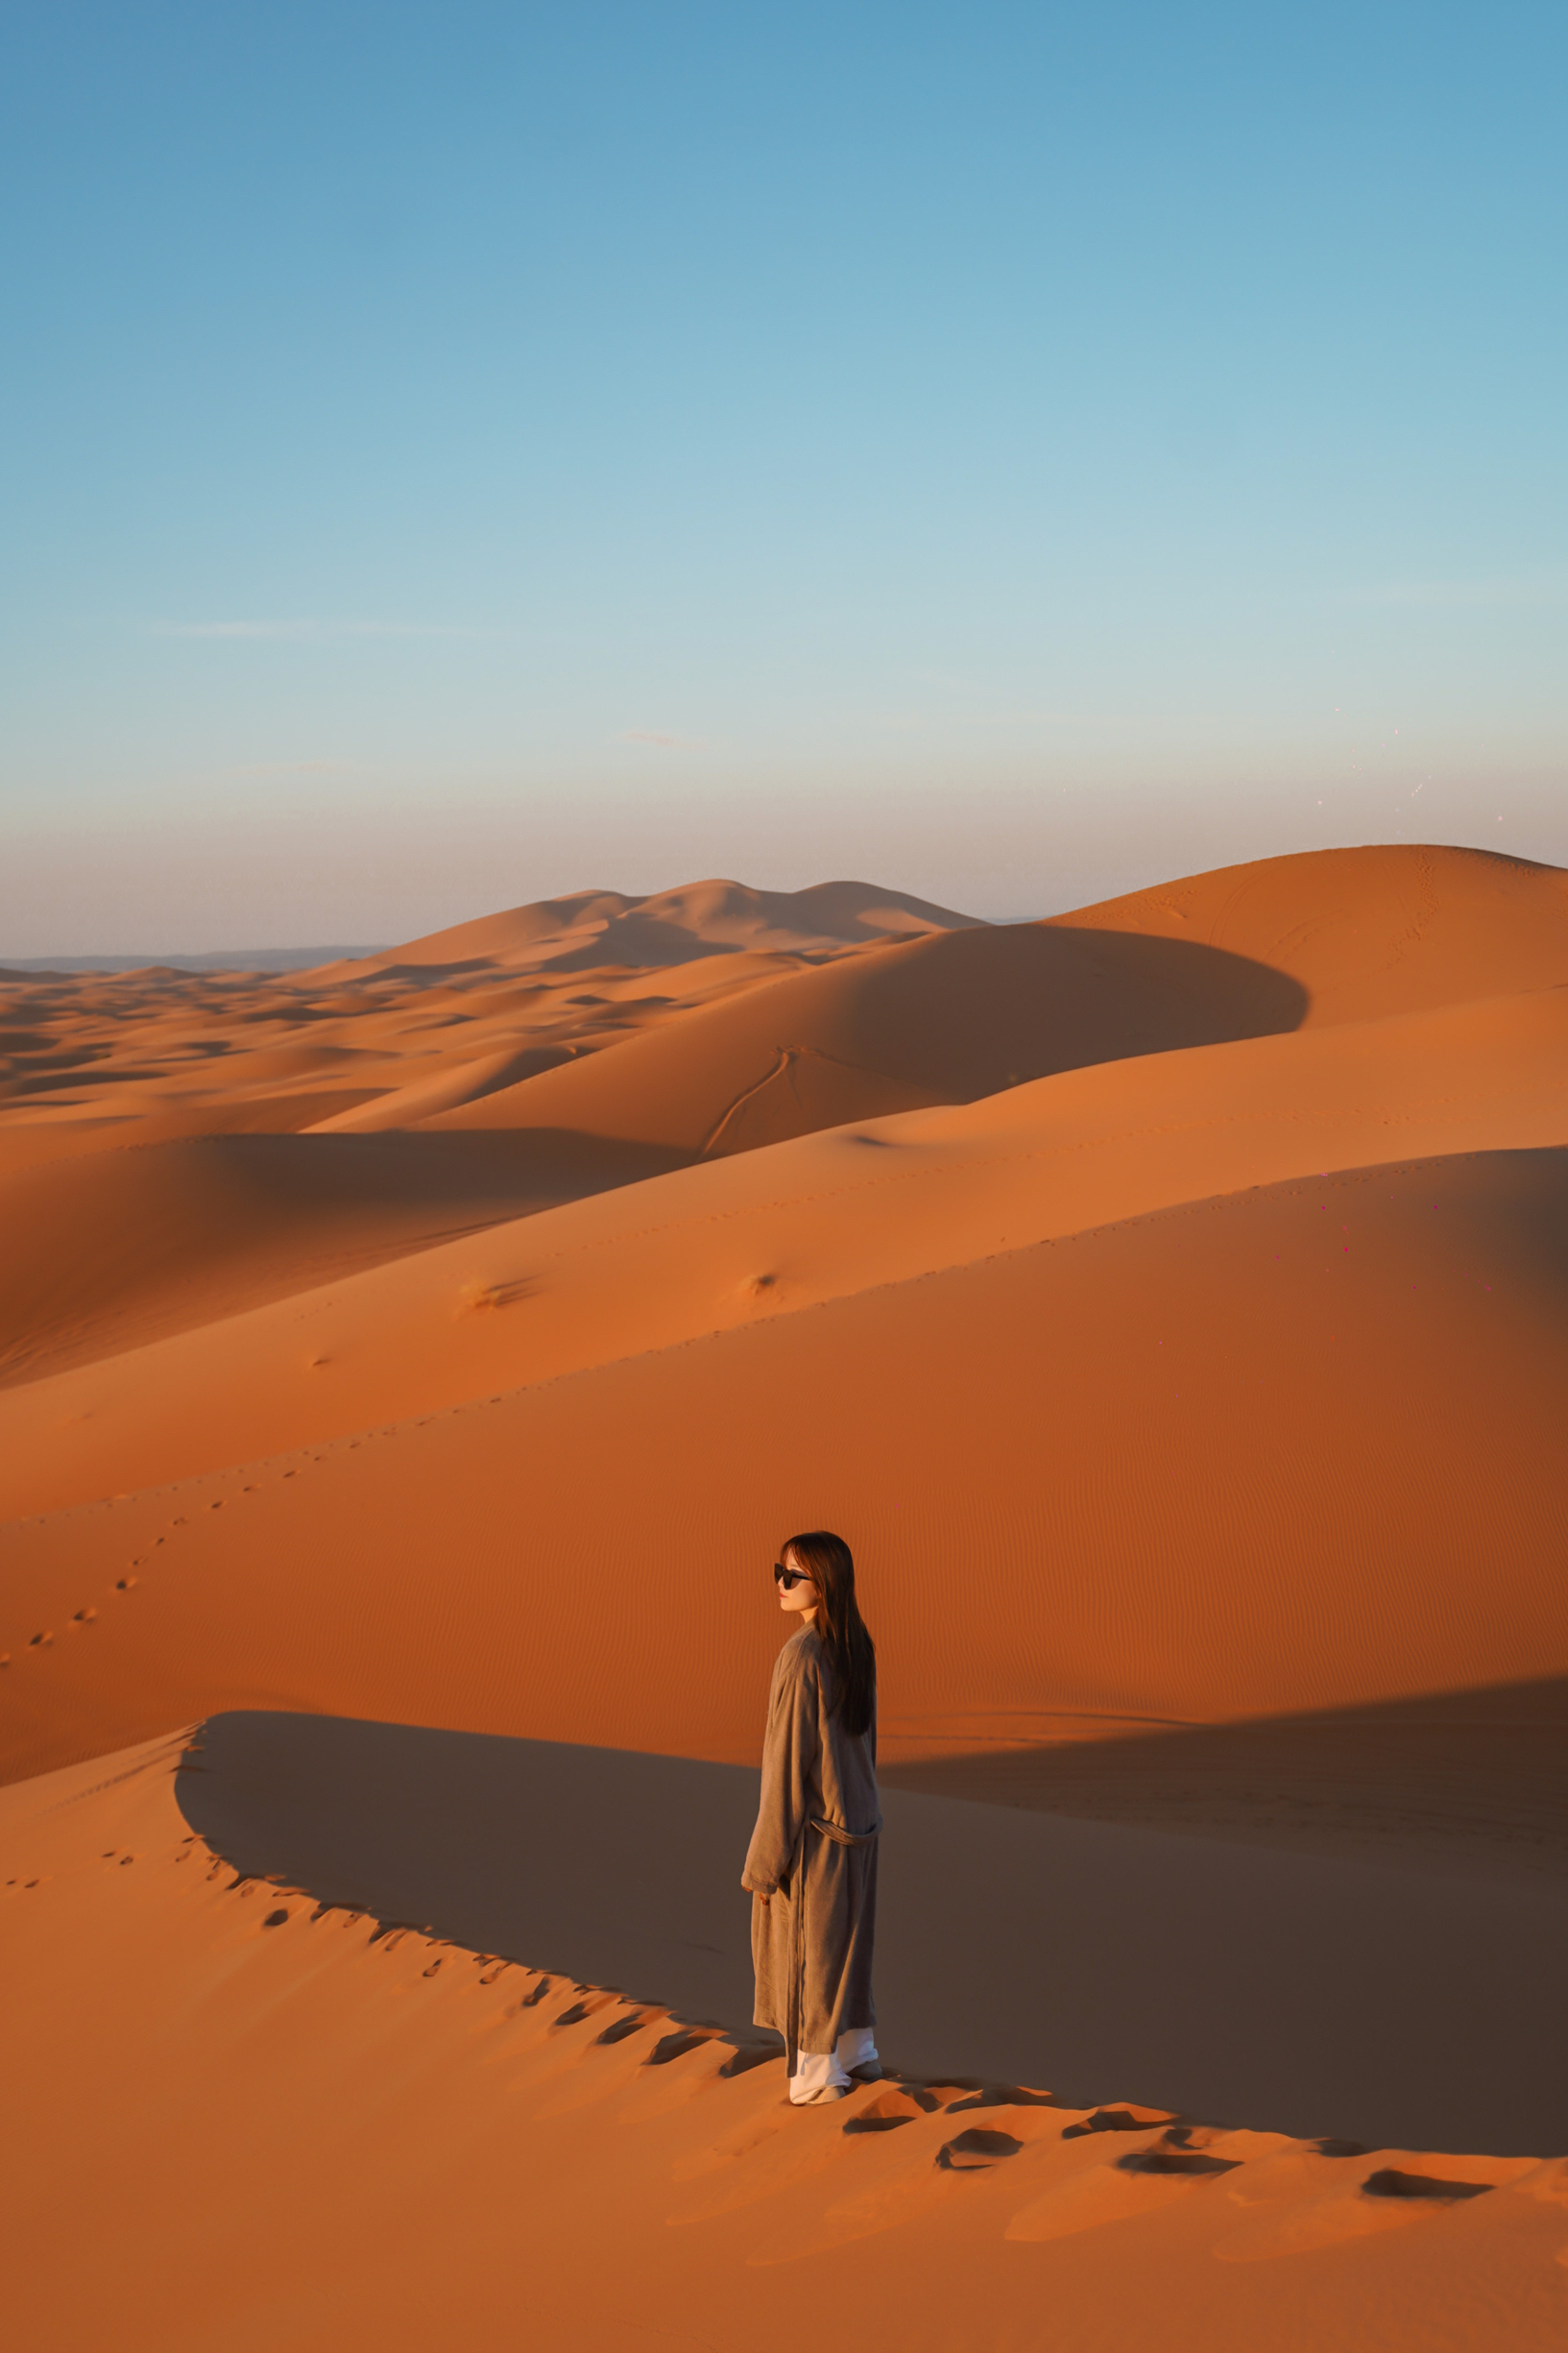 摩洛哥旅行🇲🇦住进撒哈拉沙漠营地⛺️梅尔祖卡